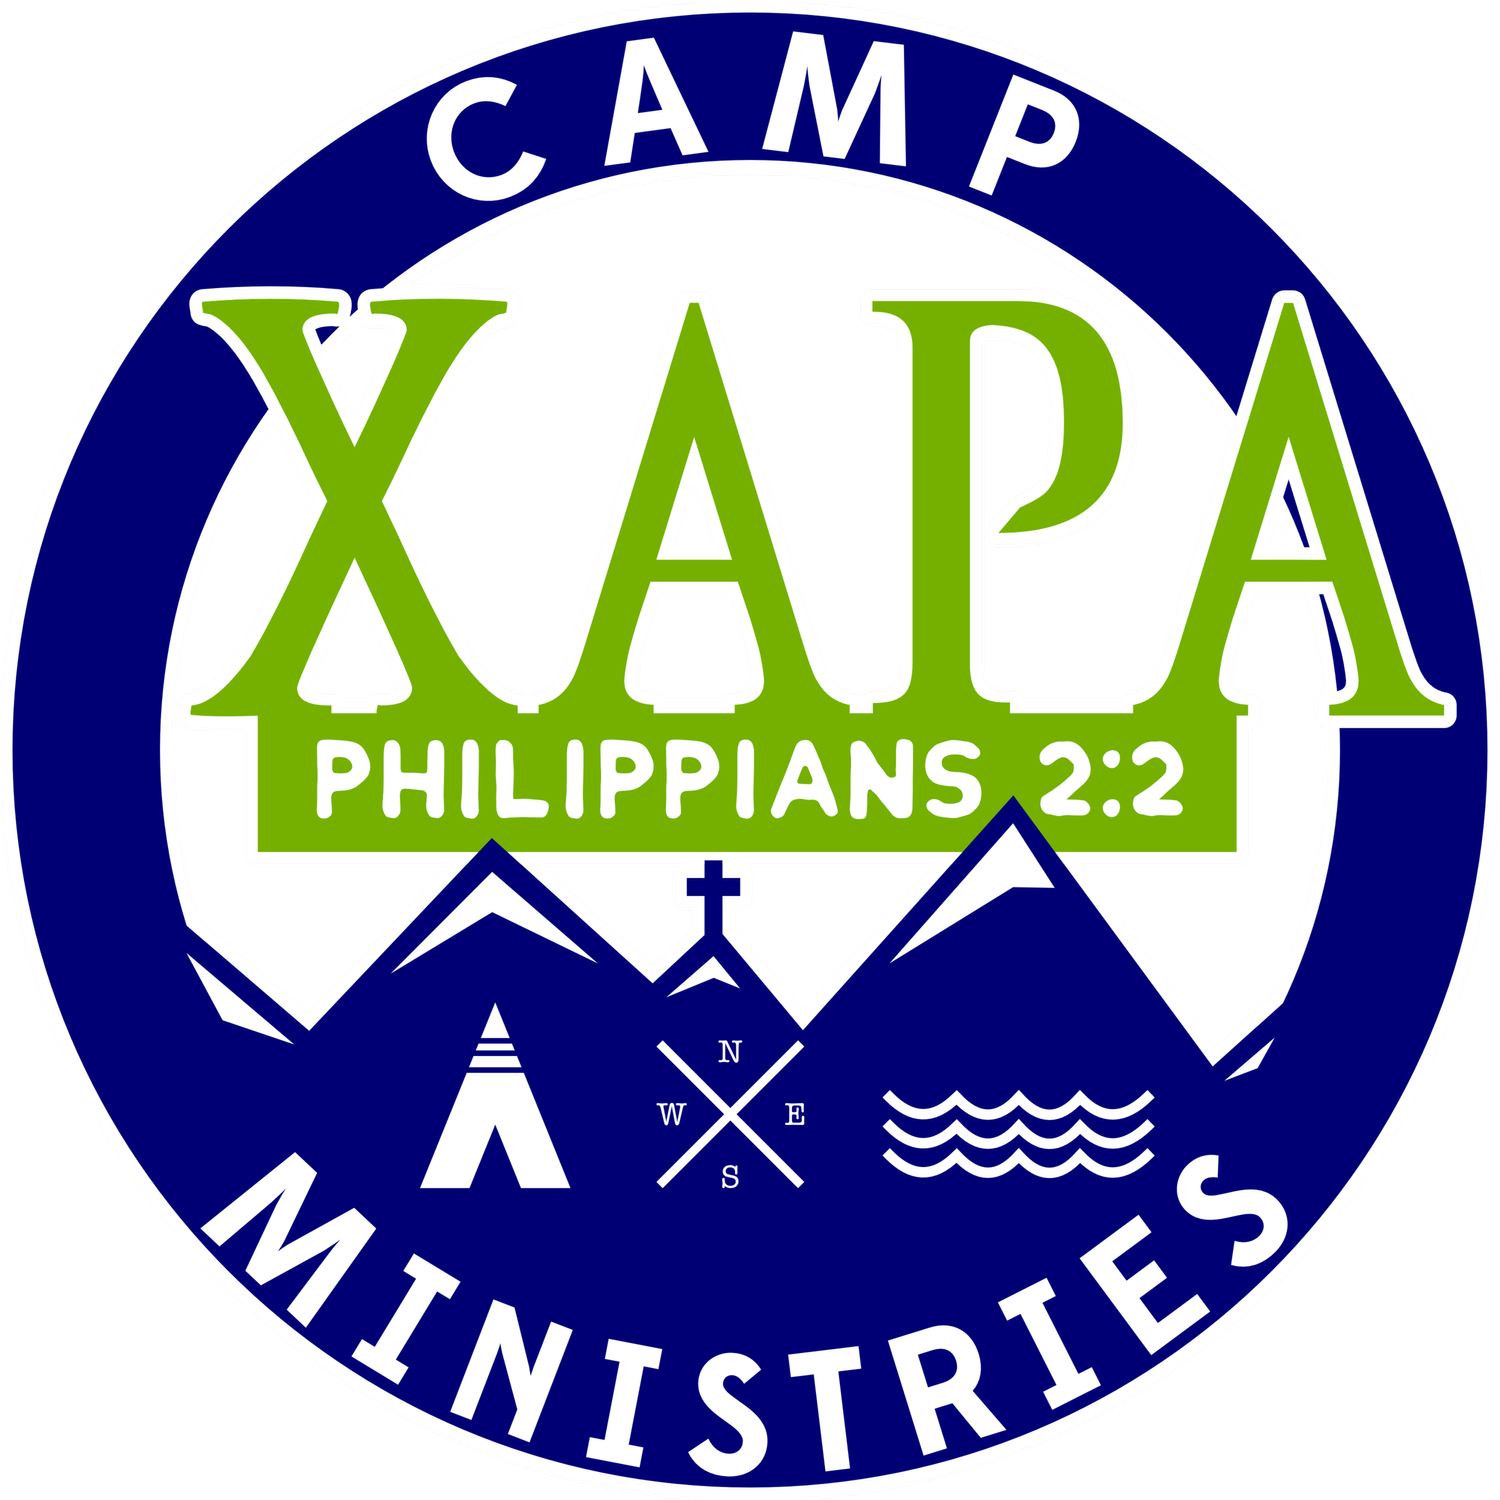 Xapa Camp